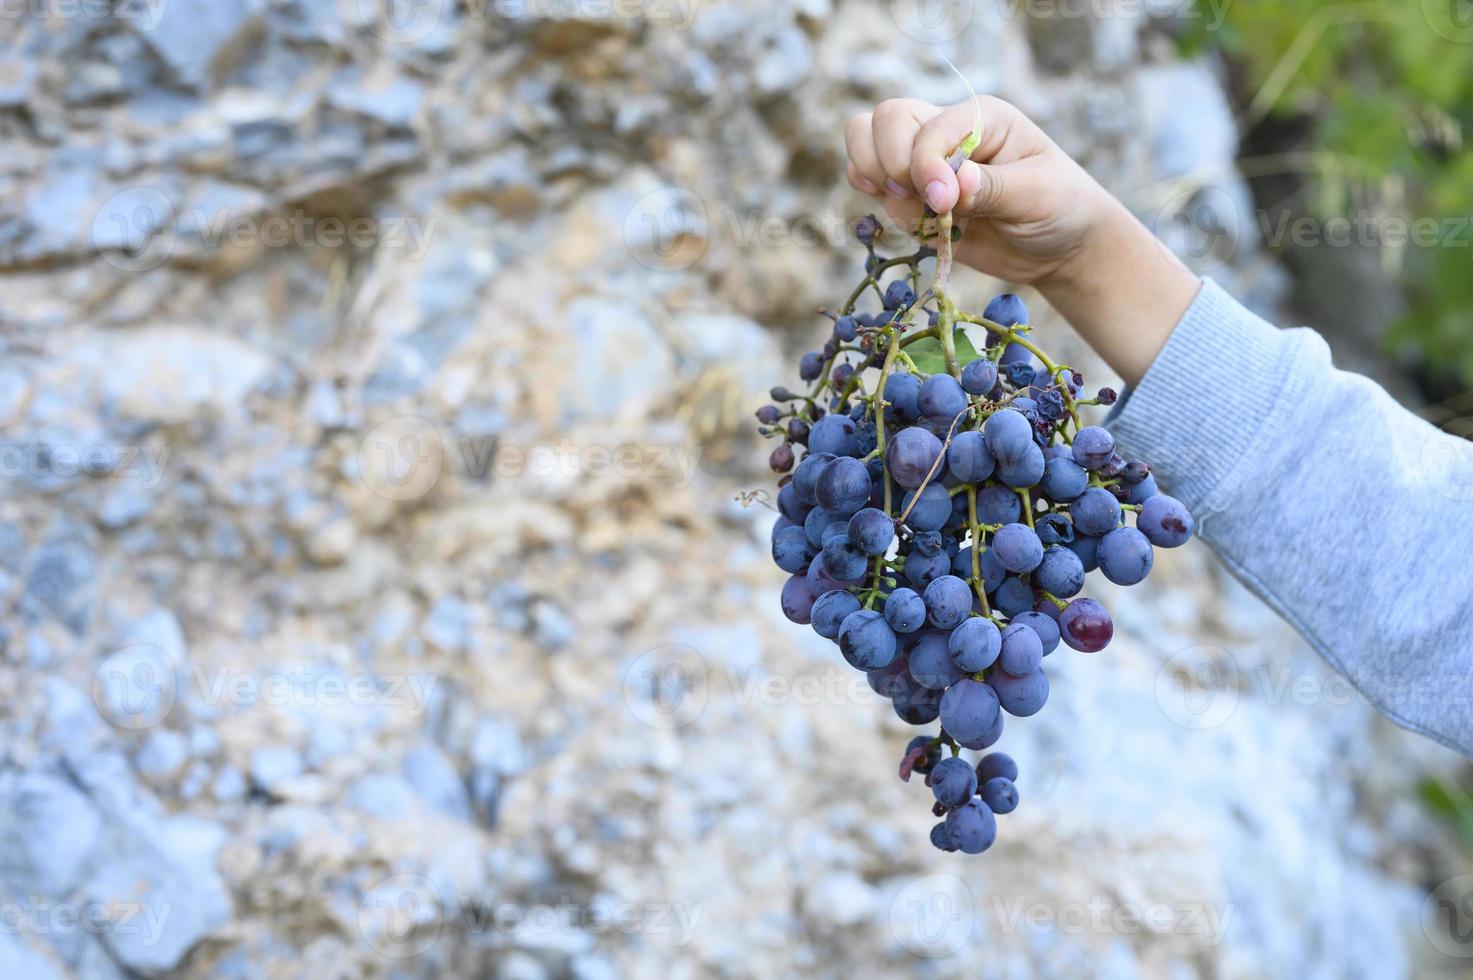 de hand van een kind houdt een bos rijpe wilde zwarte Kretenzische druiven vast tegen een stenen klif foto